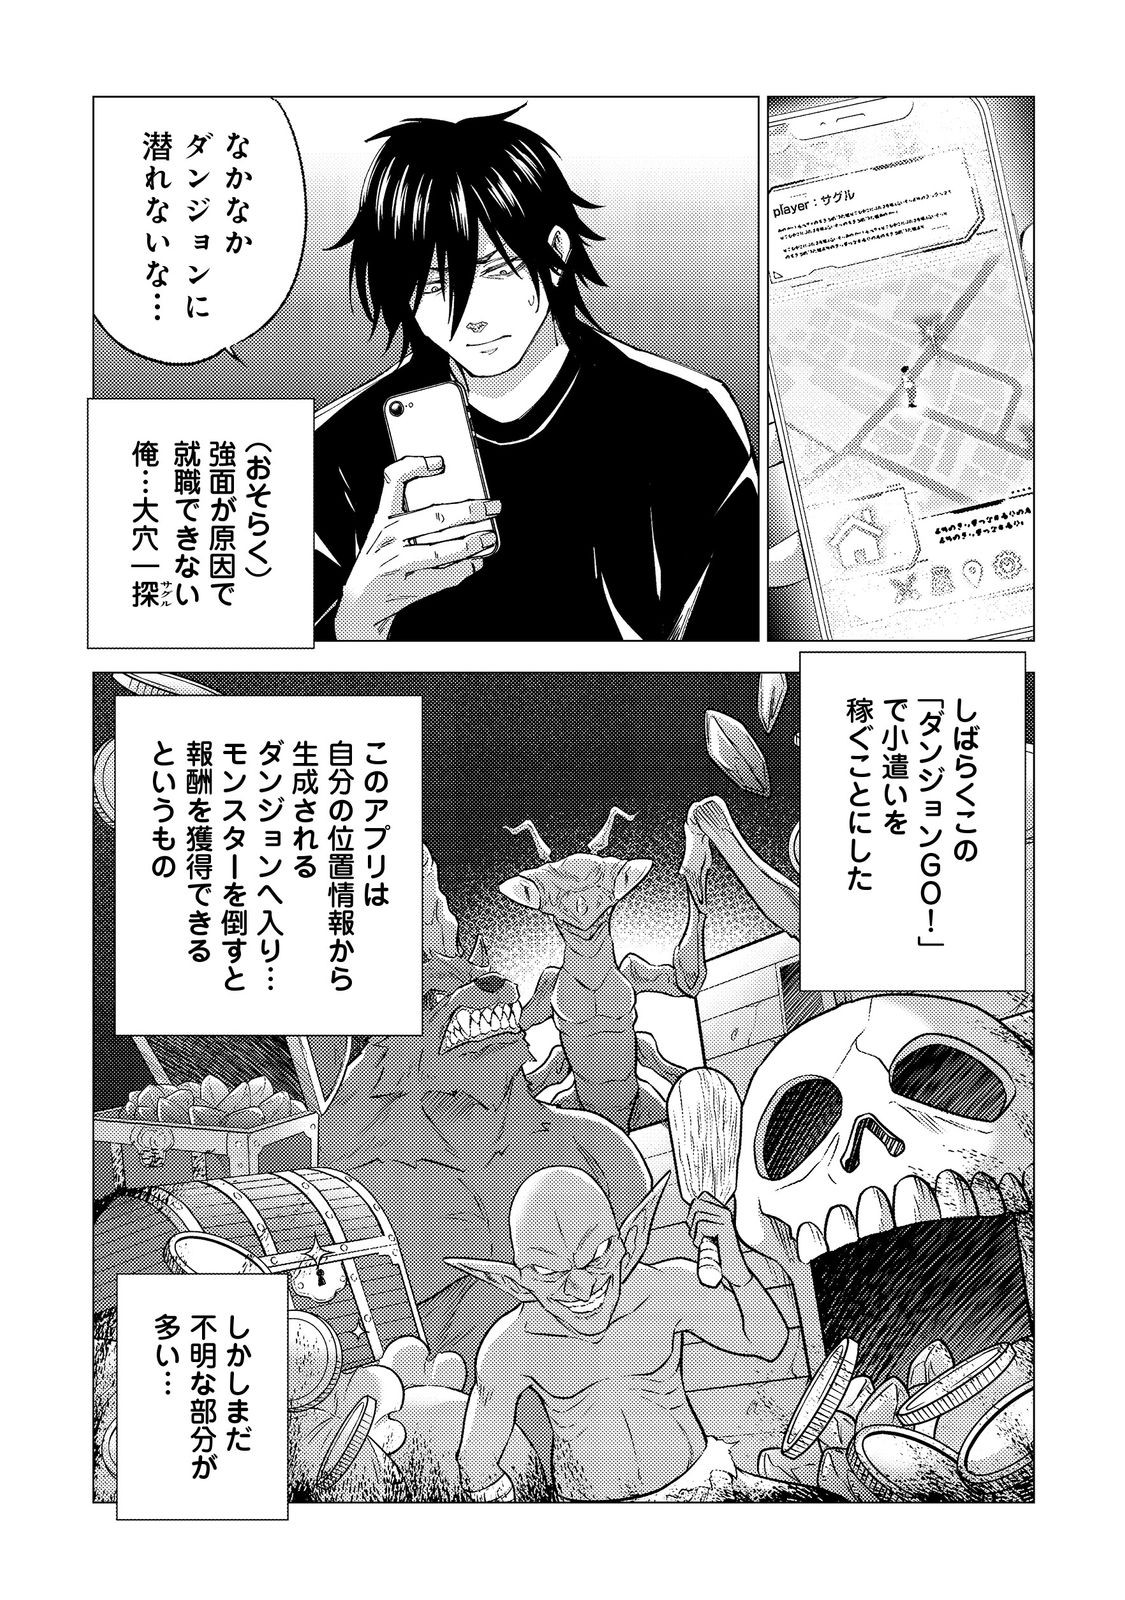 Kousotsu, Mushoku, Bocchi no Ore ga, Gendai Dungeon de Oku wo Kasegeta Wake - Chapter 2 - Page 1